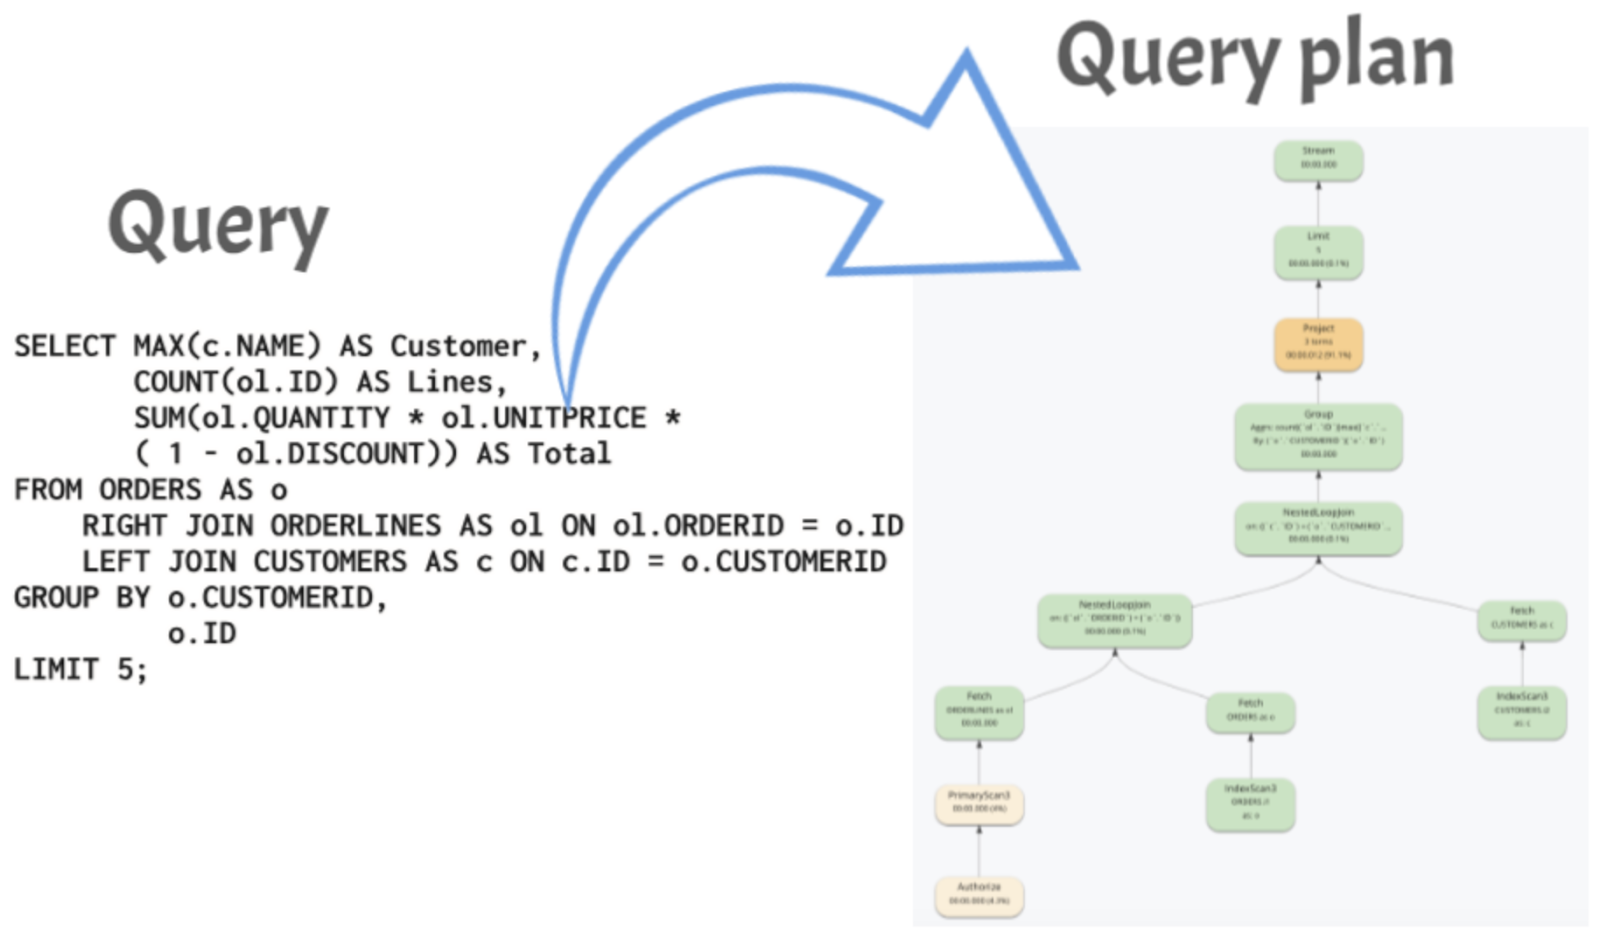 Transforming the query into a query plan